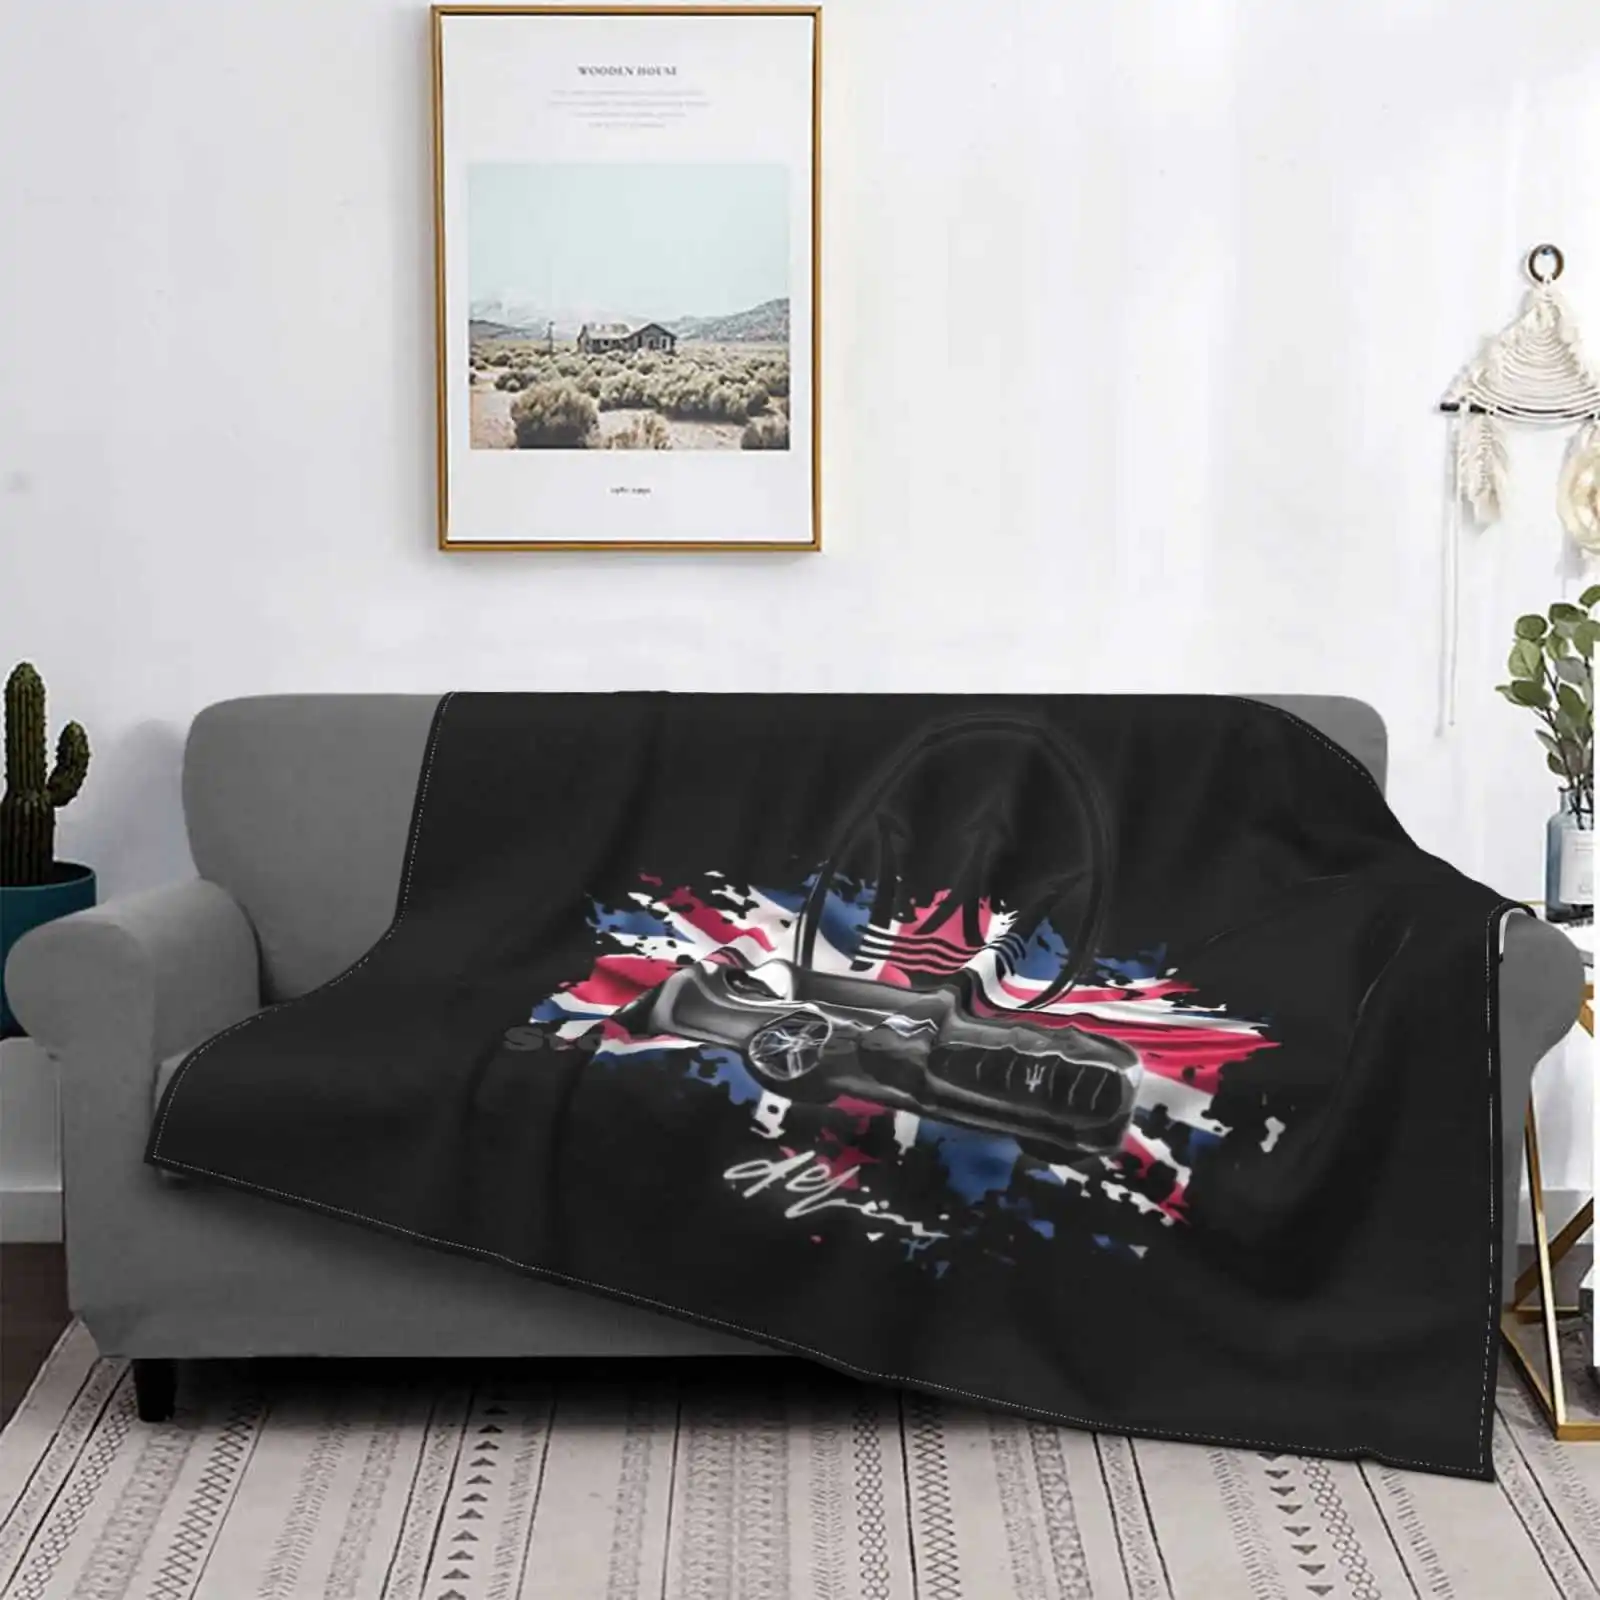 

Alfieri Concept британский флаг, лидер продаж, комнатное домашнее фланелевое одеяло, автомобиль, Италия, суперкар, альфир, логотип, автомобили Fiat ...